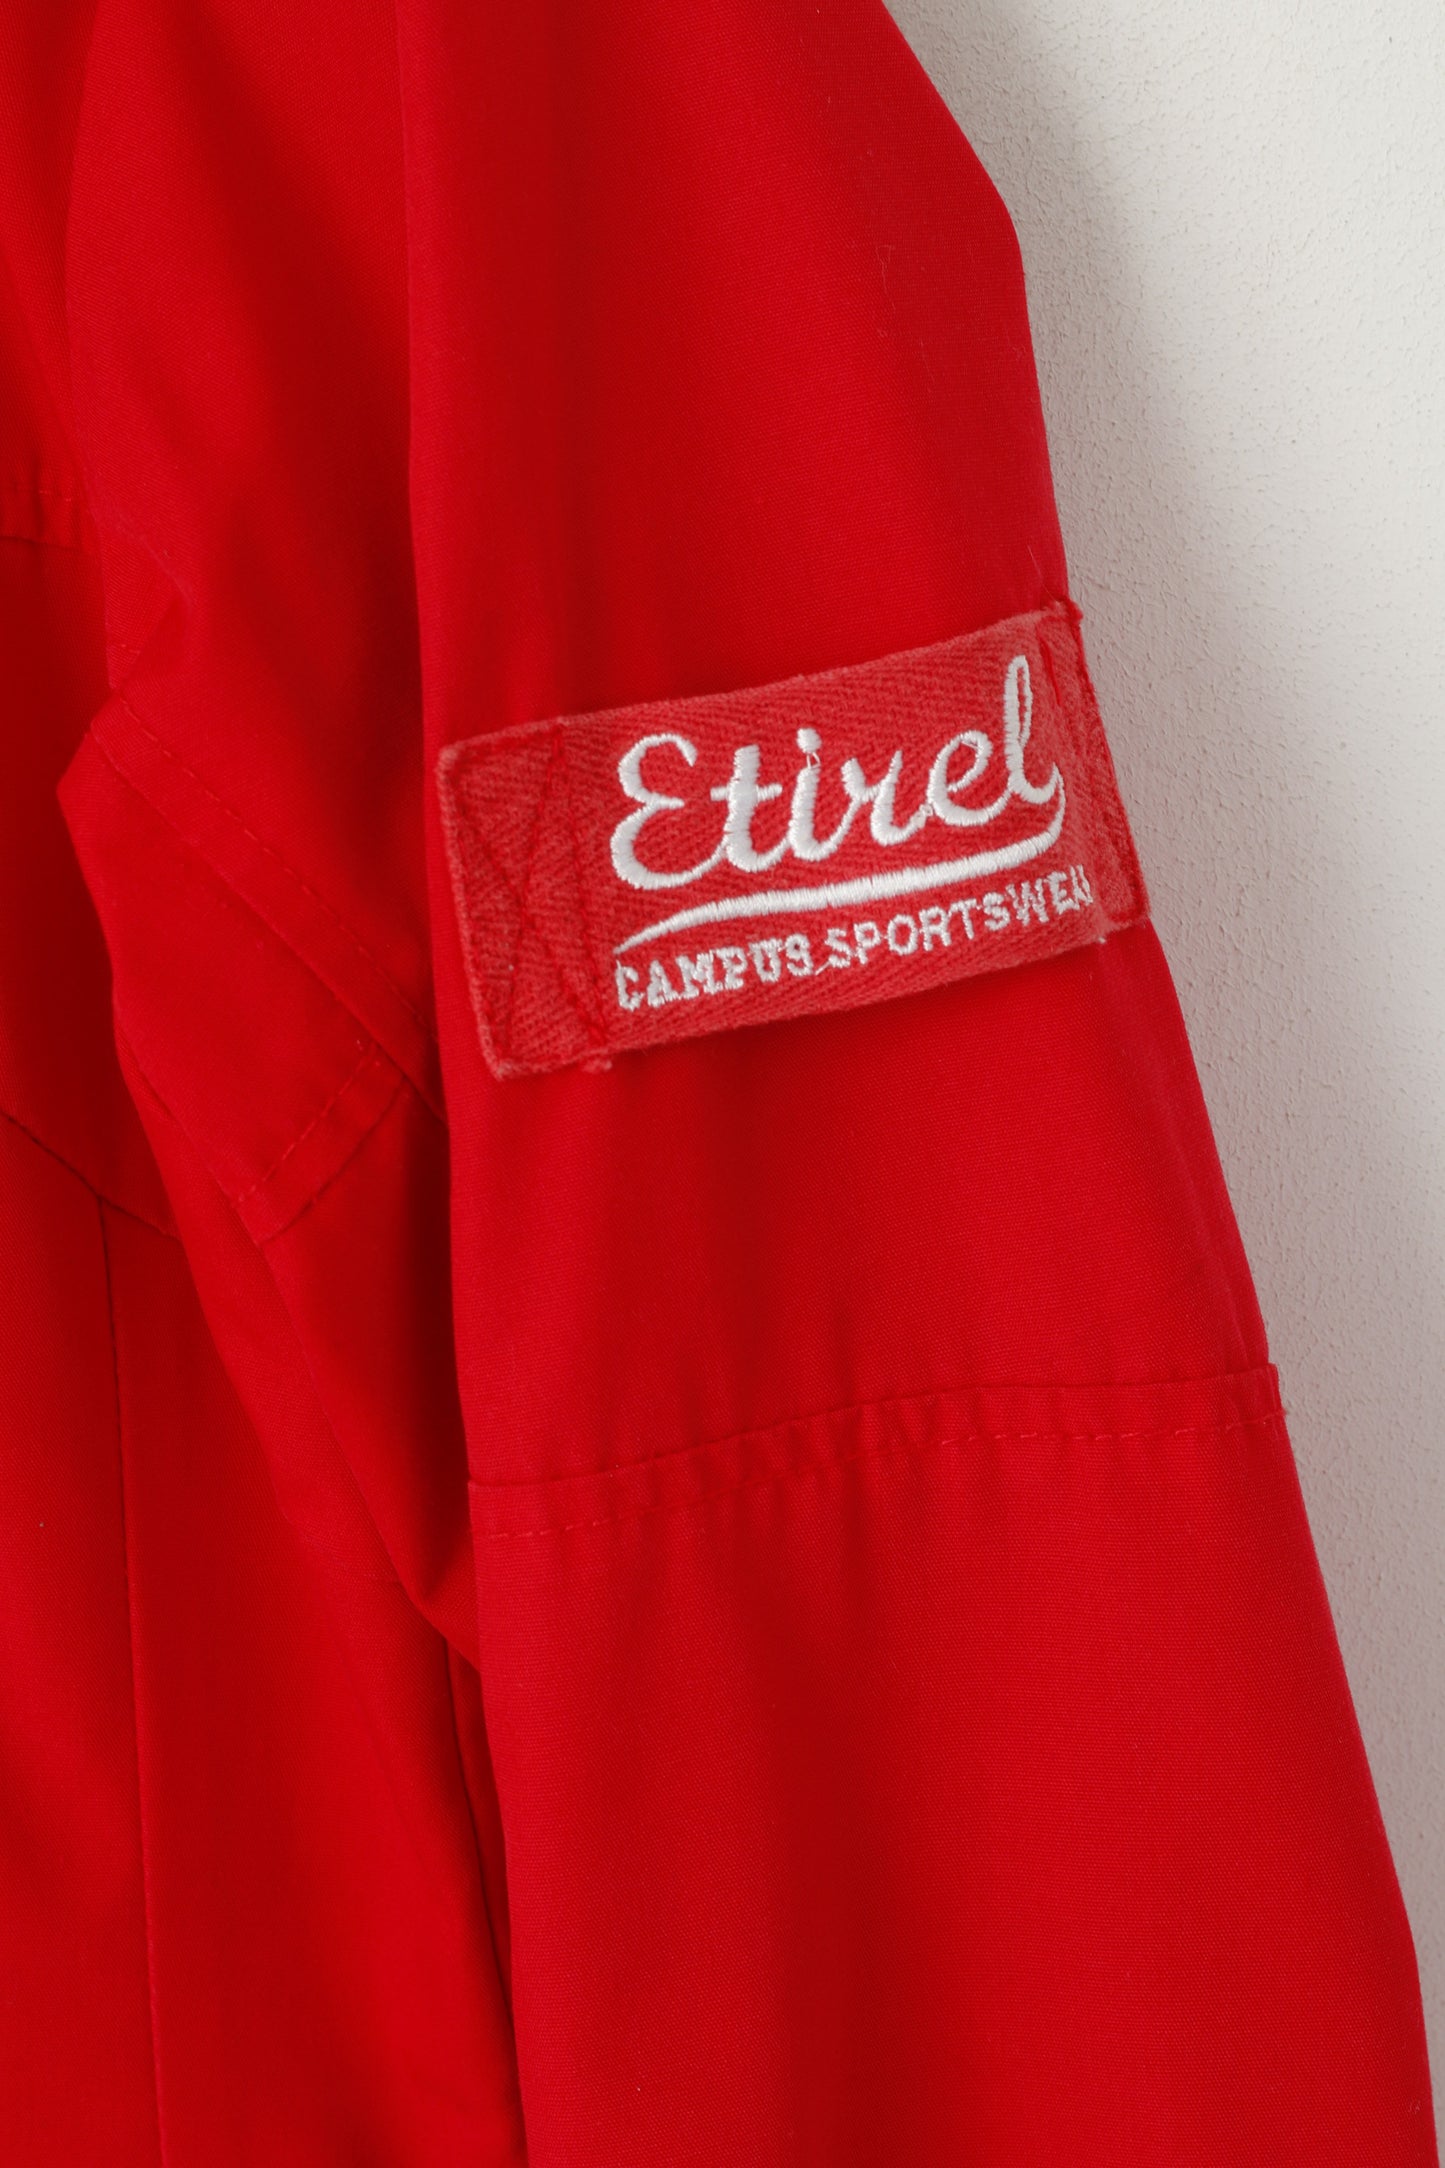 Giacca Etirel da donna 36 S rossa Campus Sportswear con cappuccio, tasche con cerniera intera